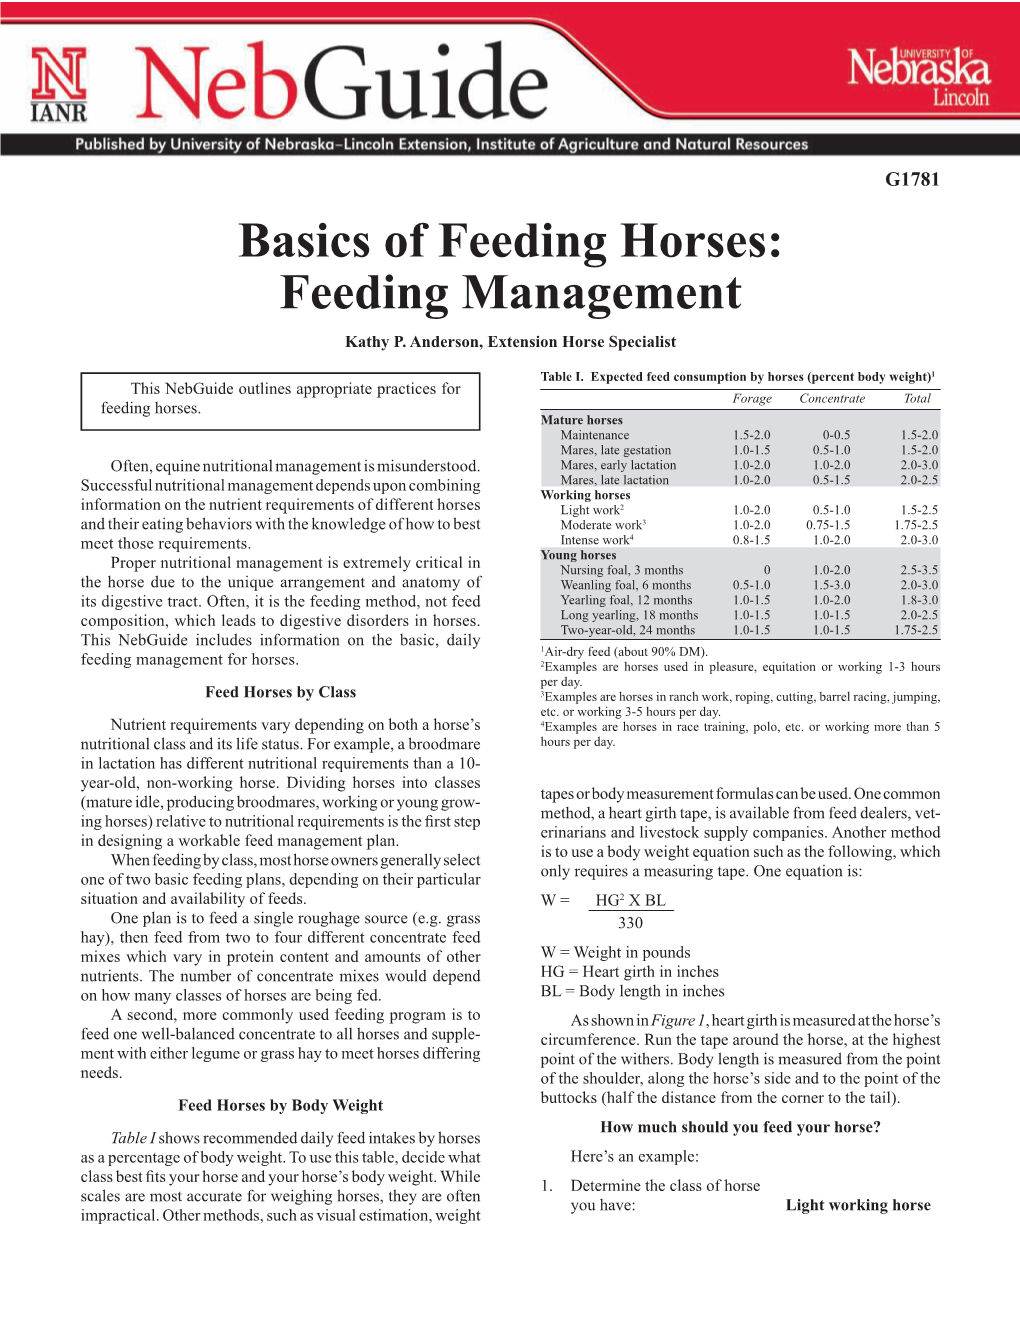 Basics of Feeding Horses: Feeding Management